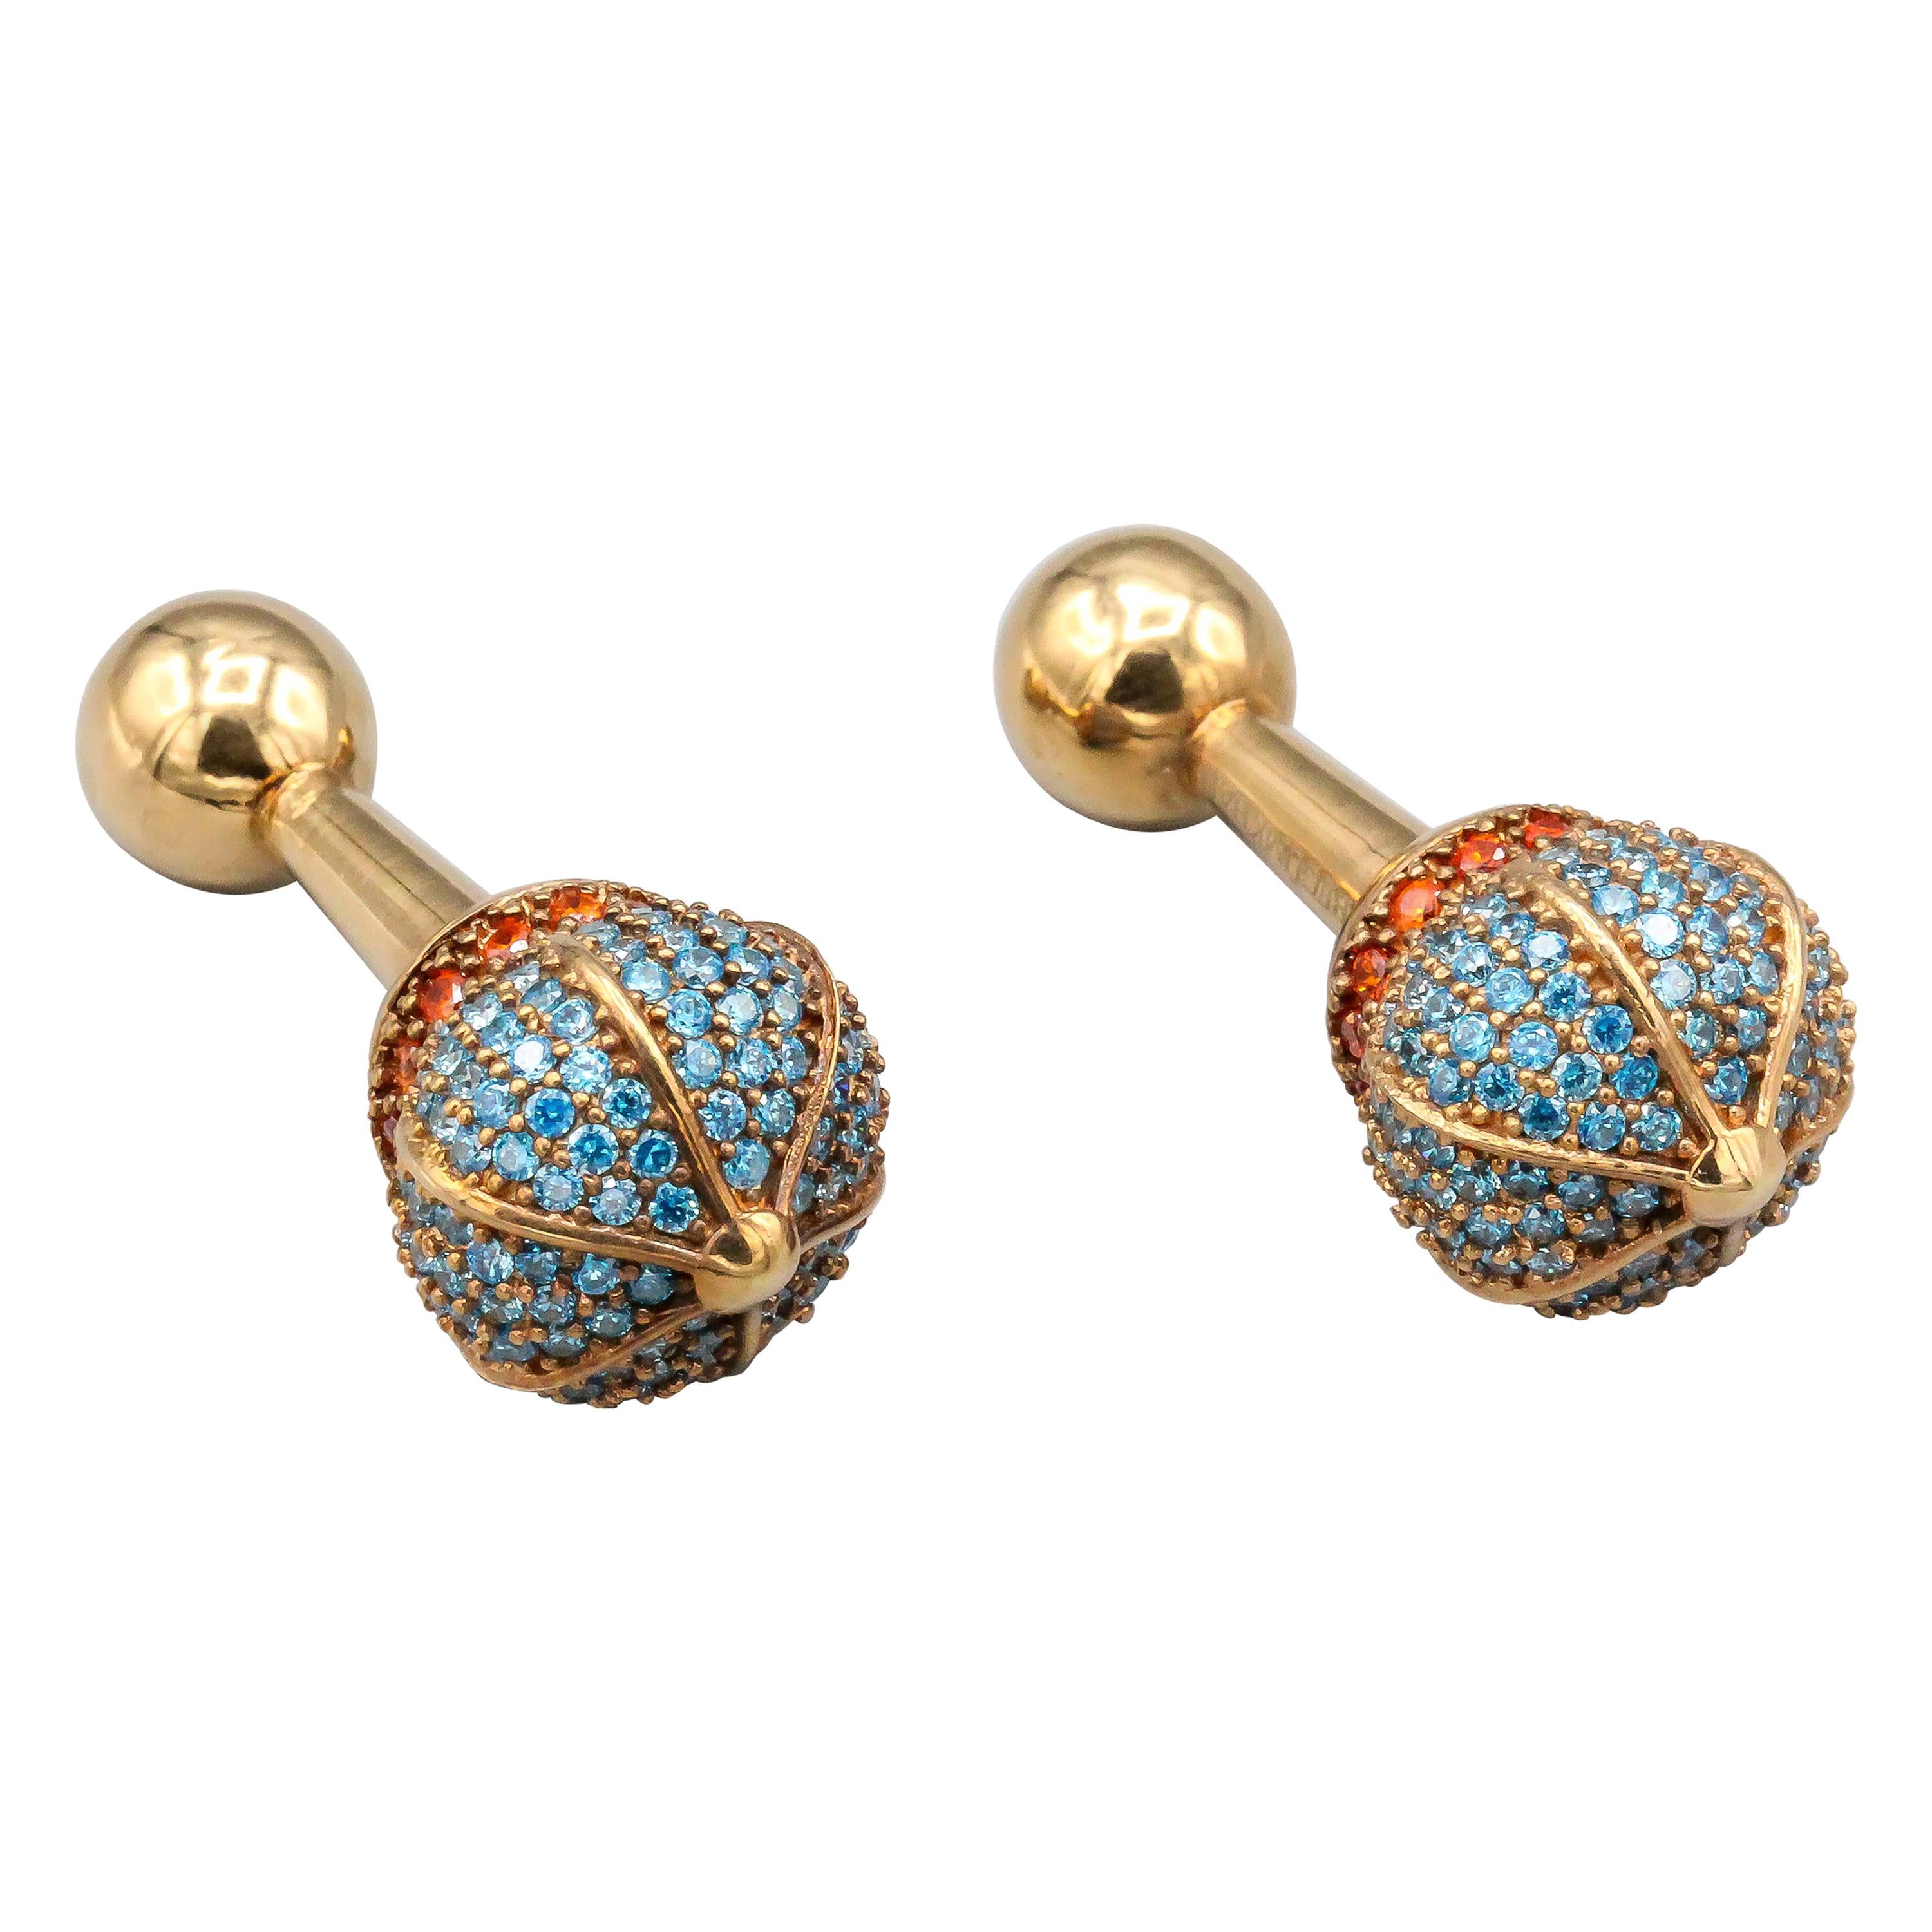 Begum Khan Colored Stone and Sapphire 18 Karat Gold Cufflinks